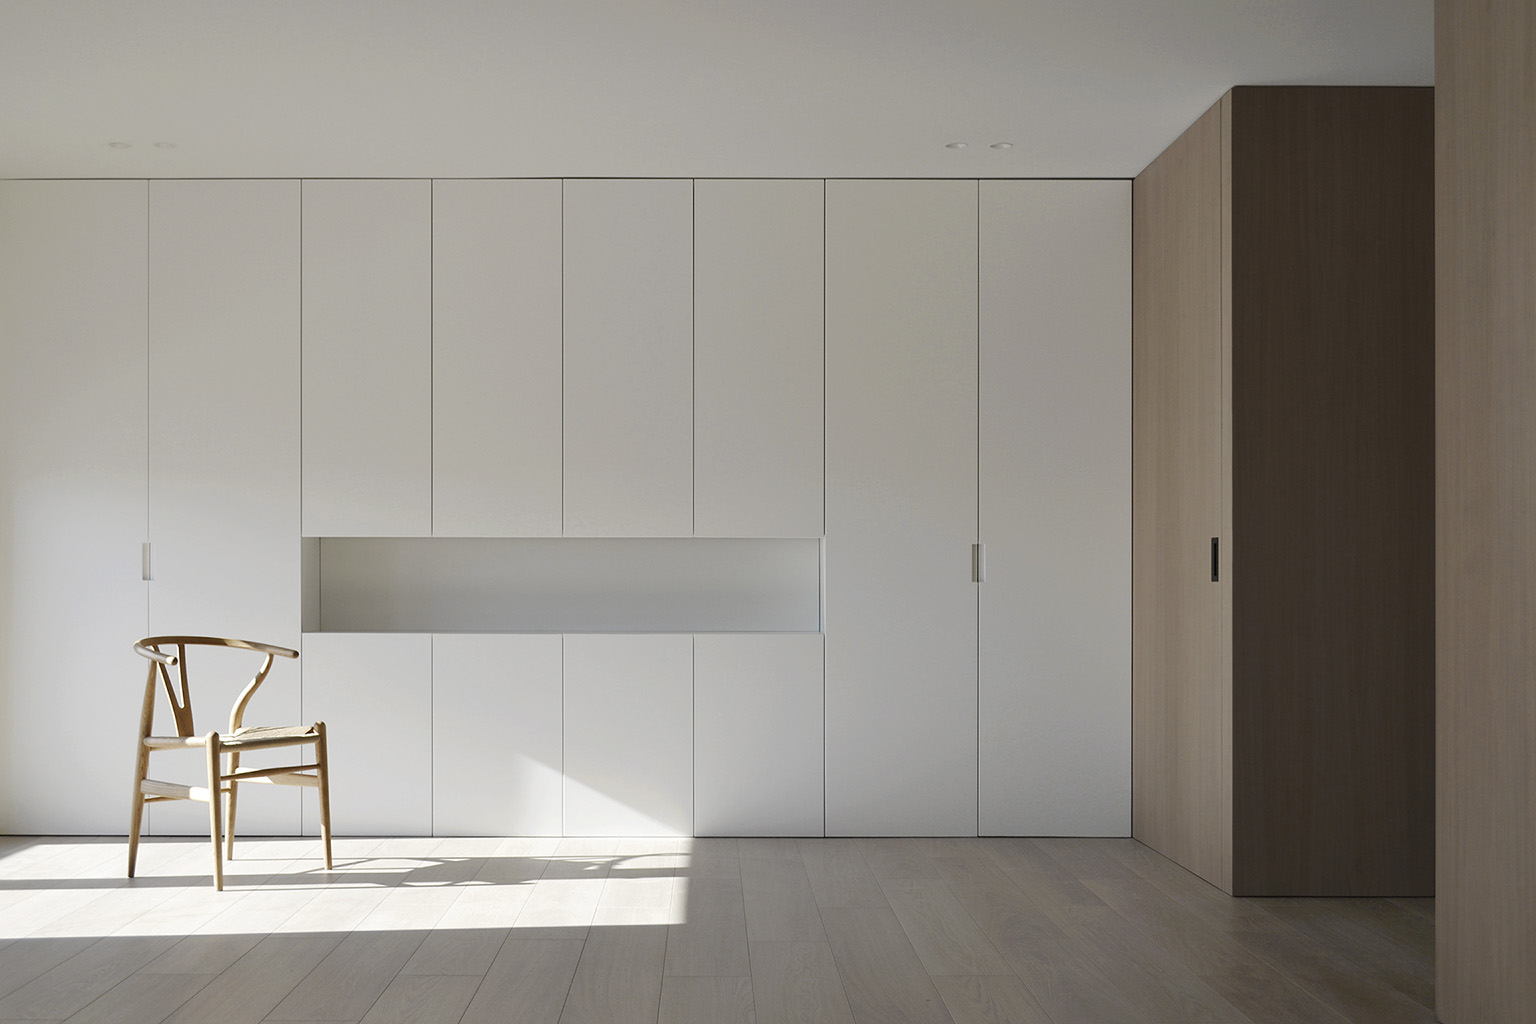 极简公寓设计案例,公寓设计,极简主义,国外极简风格公寓设计,Deza Setien,马德里,原木色+白色,公寓设计方案,120㎡